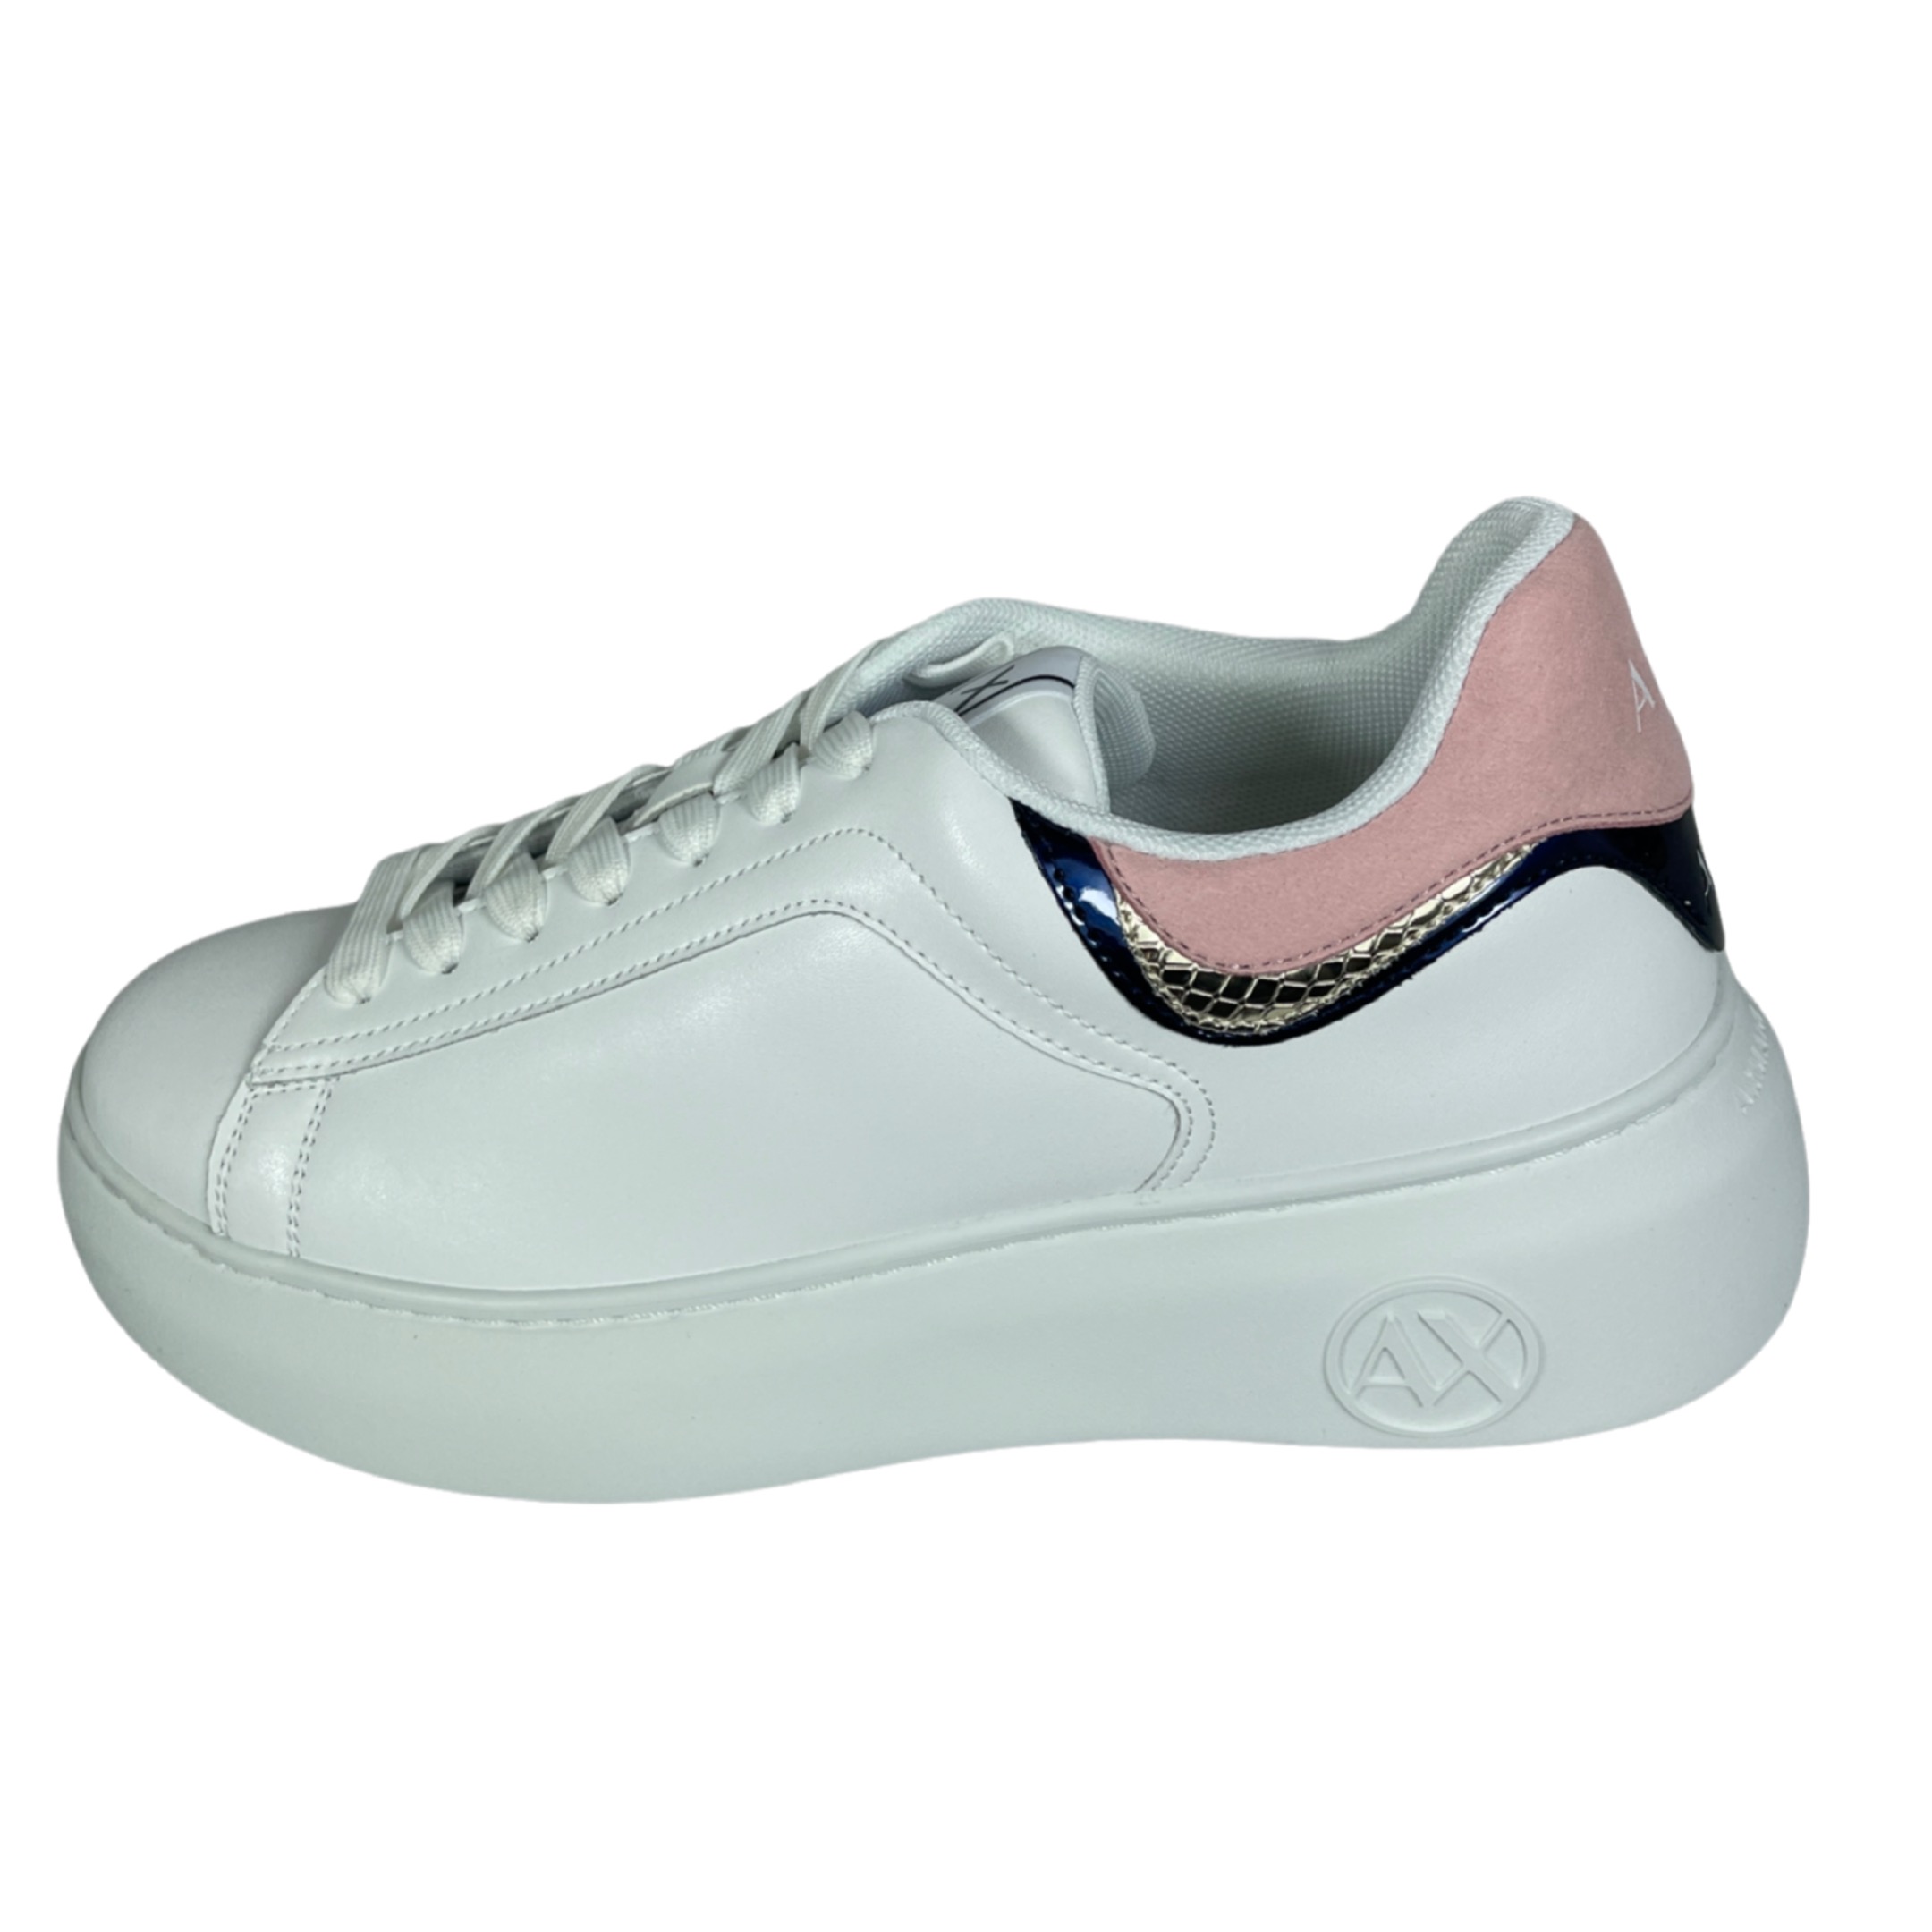 ARMANI XDX108 XV731 Damen Leder Sneakers OPEN WHITE / BLUE